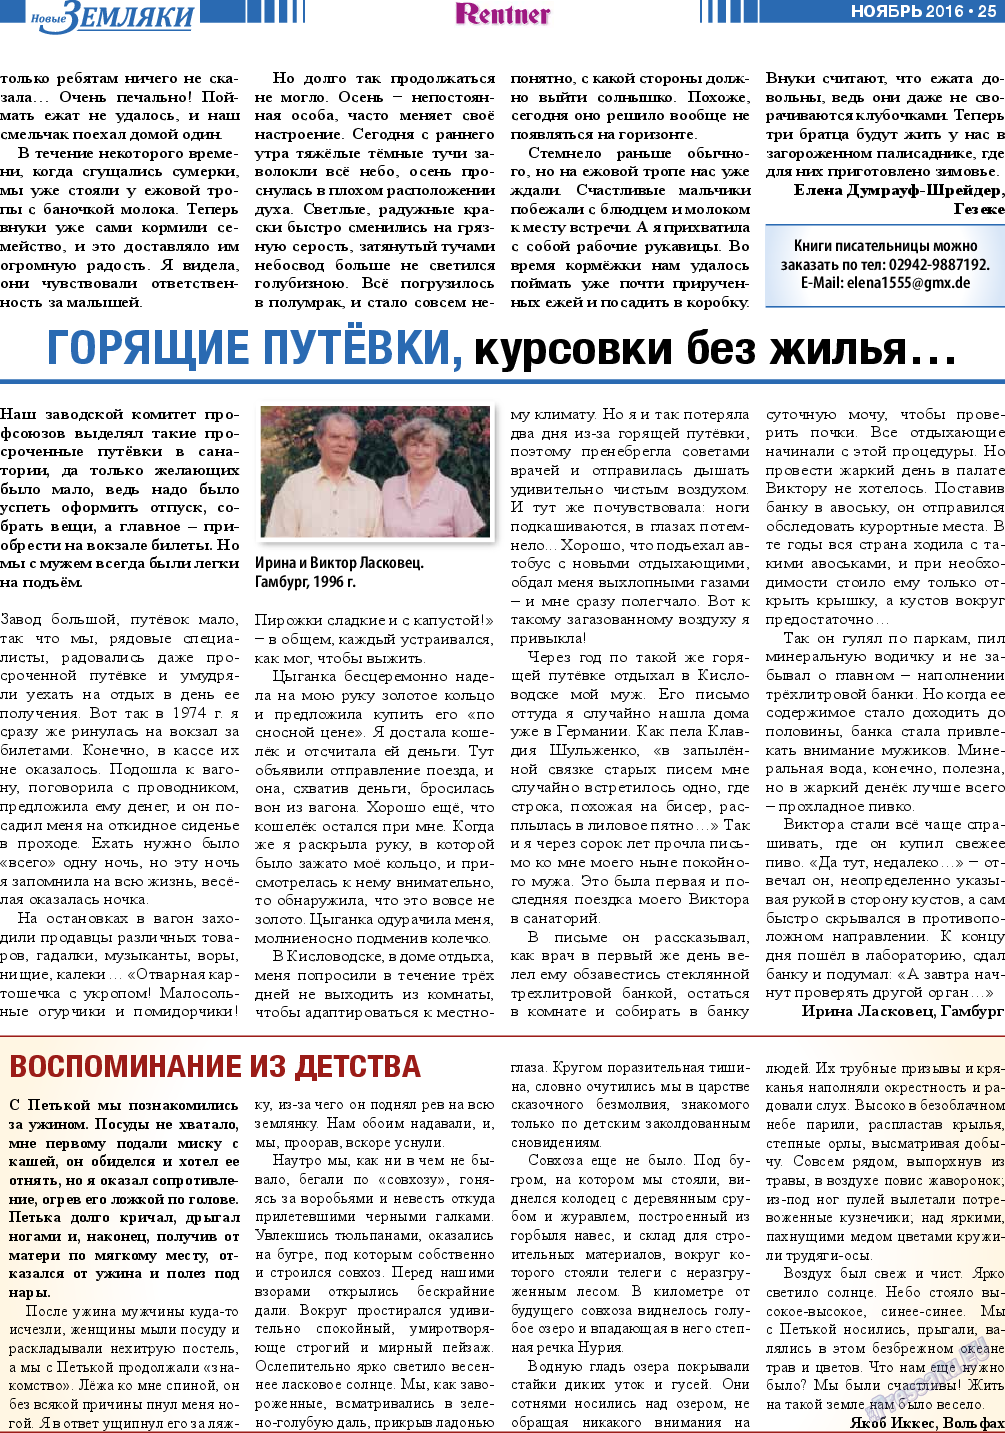 Новые Земляки, газета. 2016 №11 стр.25